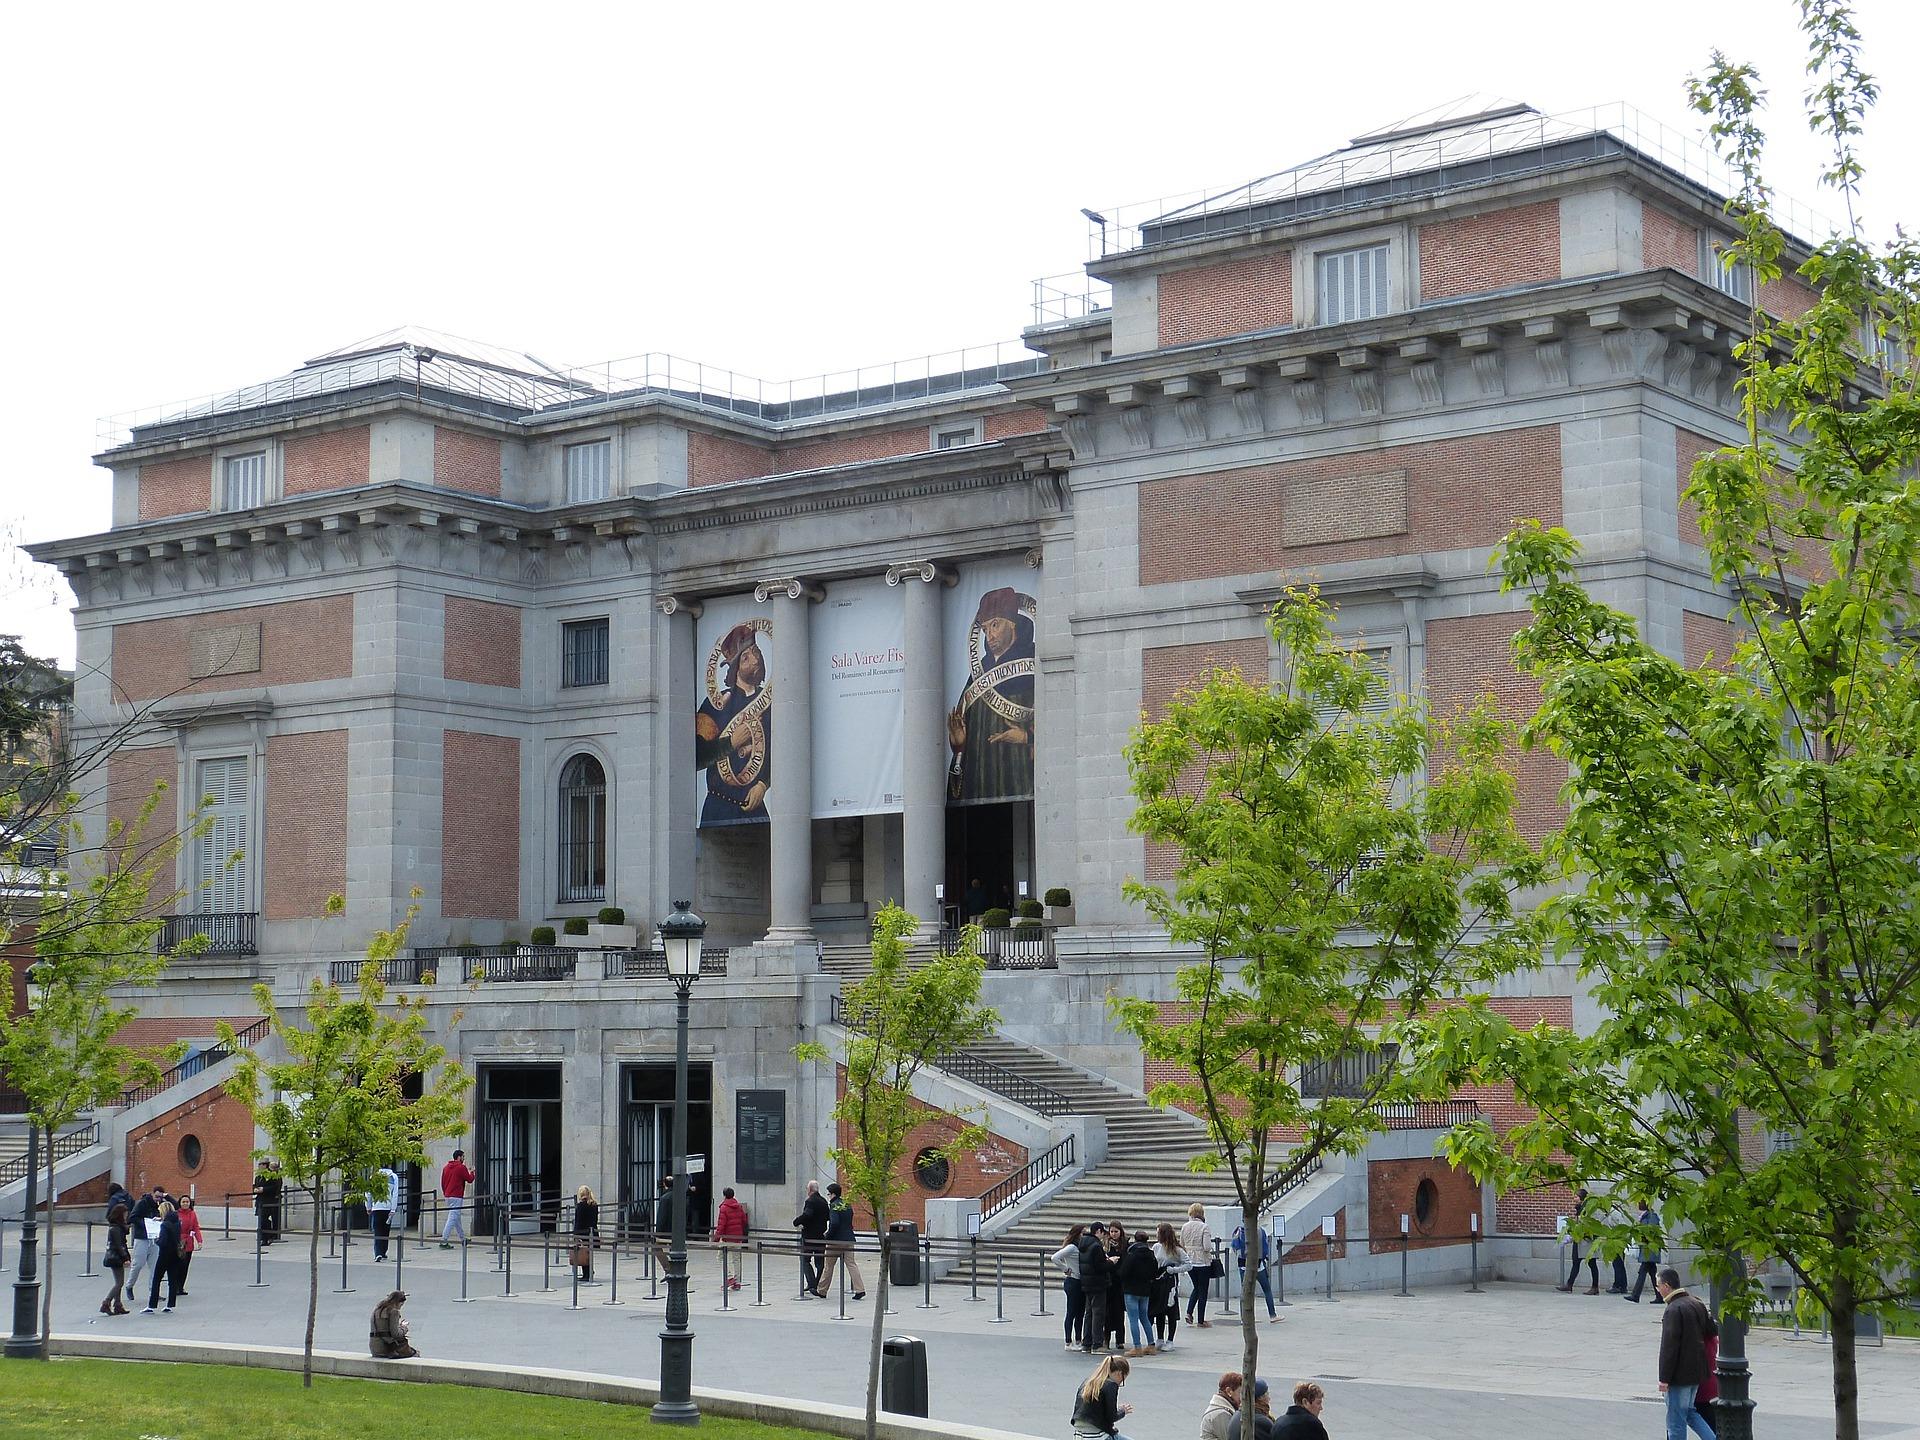 Prado Museum: Guided tour + Tickets